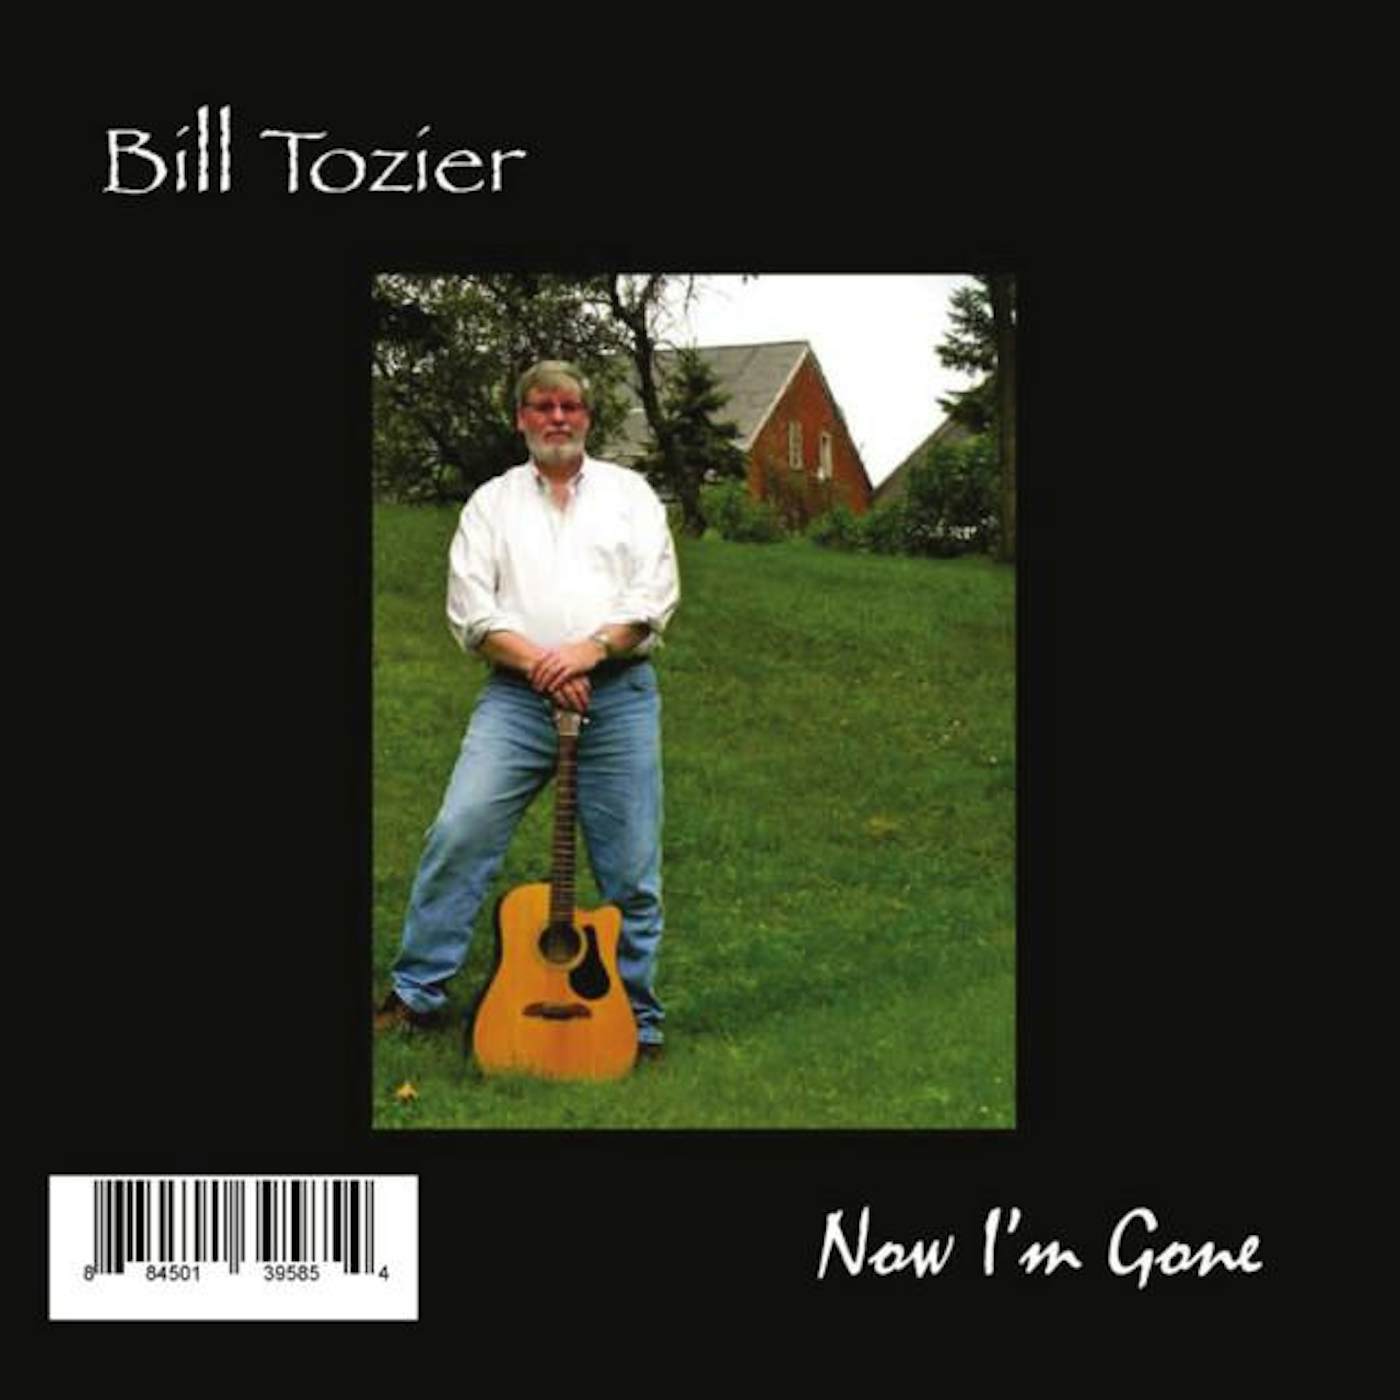 Bill Tozier